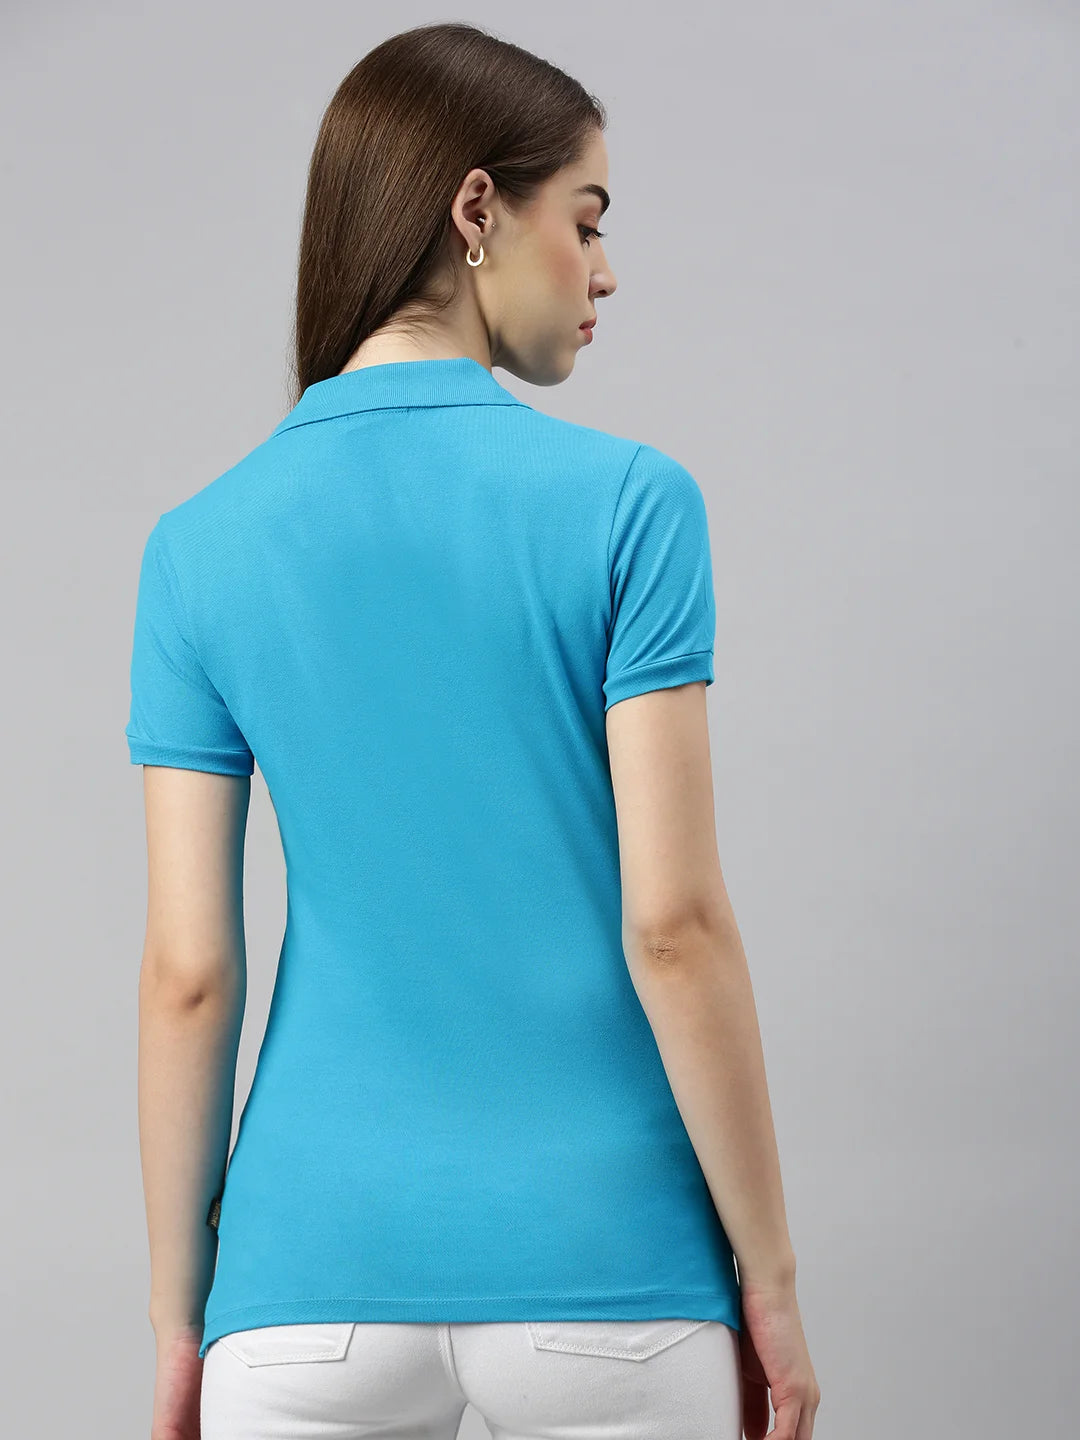 donna-stacy-organico-fairtrade-polo-maglietta-brillante-azzurro-schienale